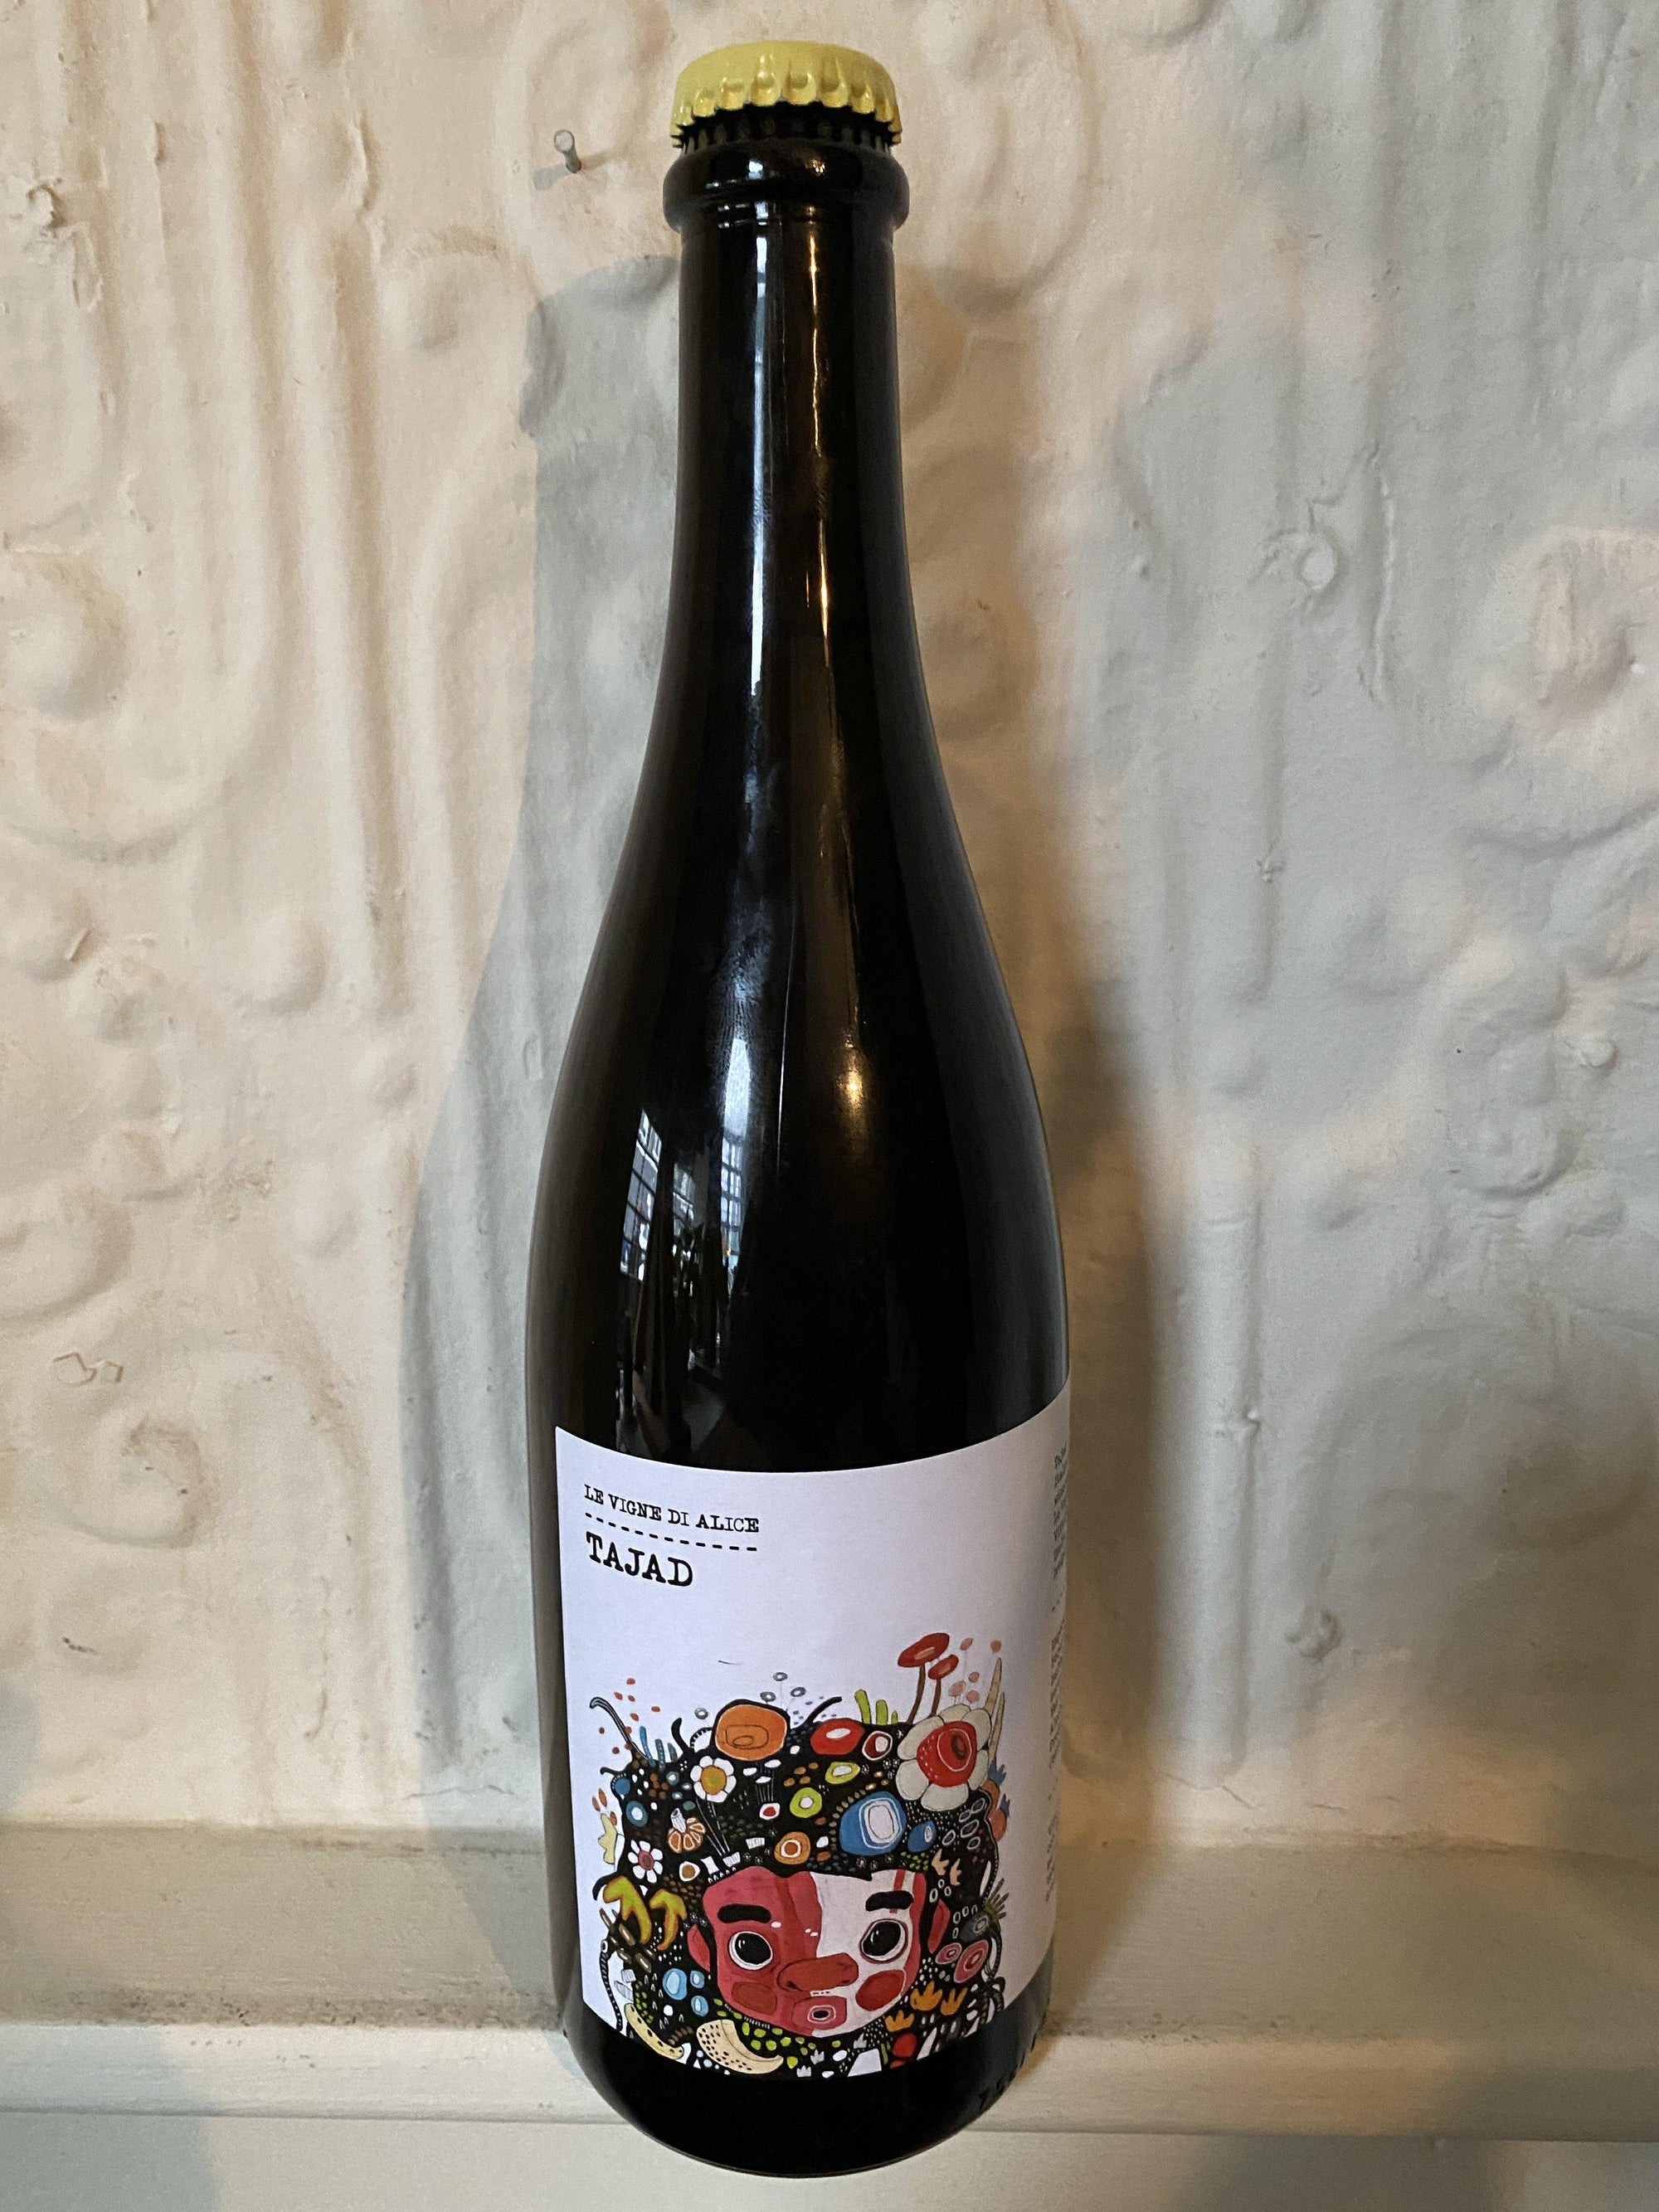 Tajad, Le Vigne di Alice NV (Veneto, Italy)-Wine-Bibber & Bell